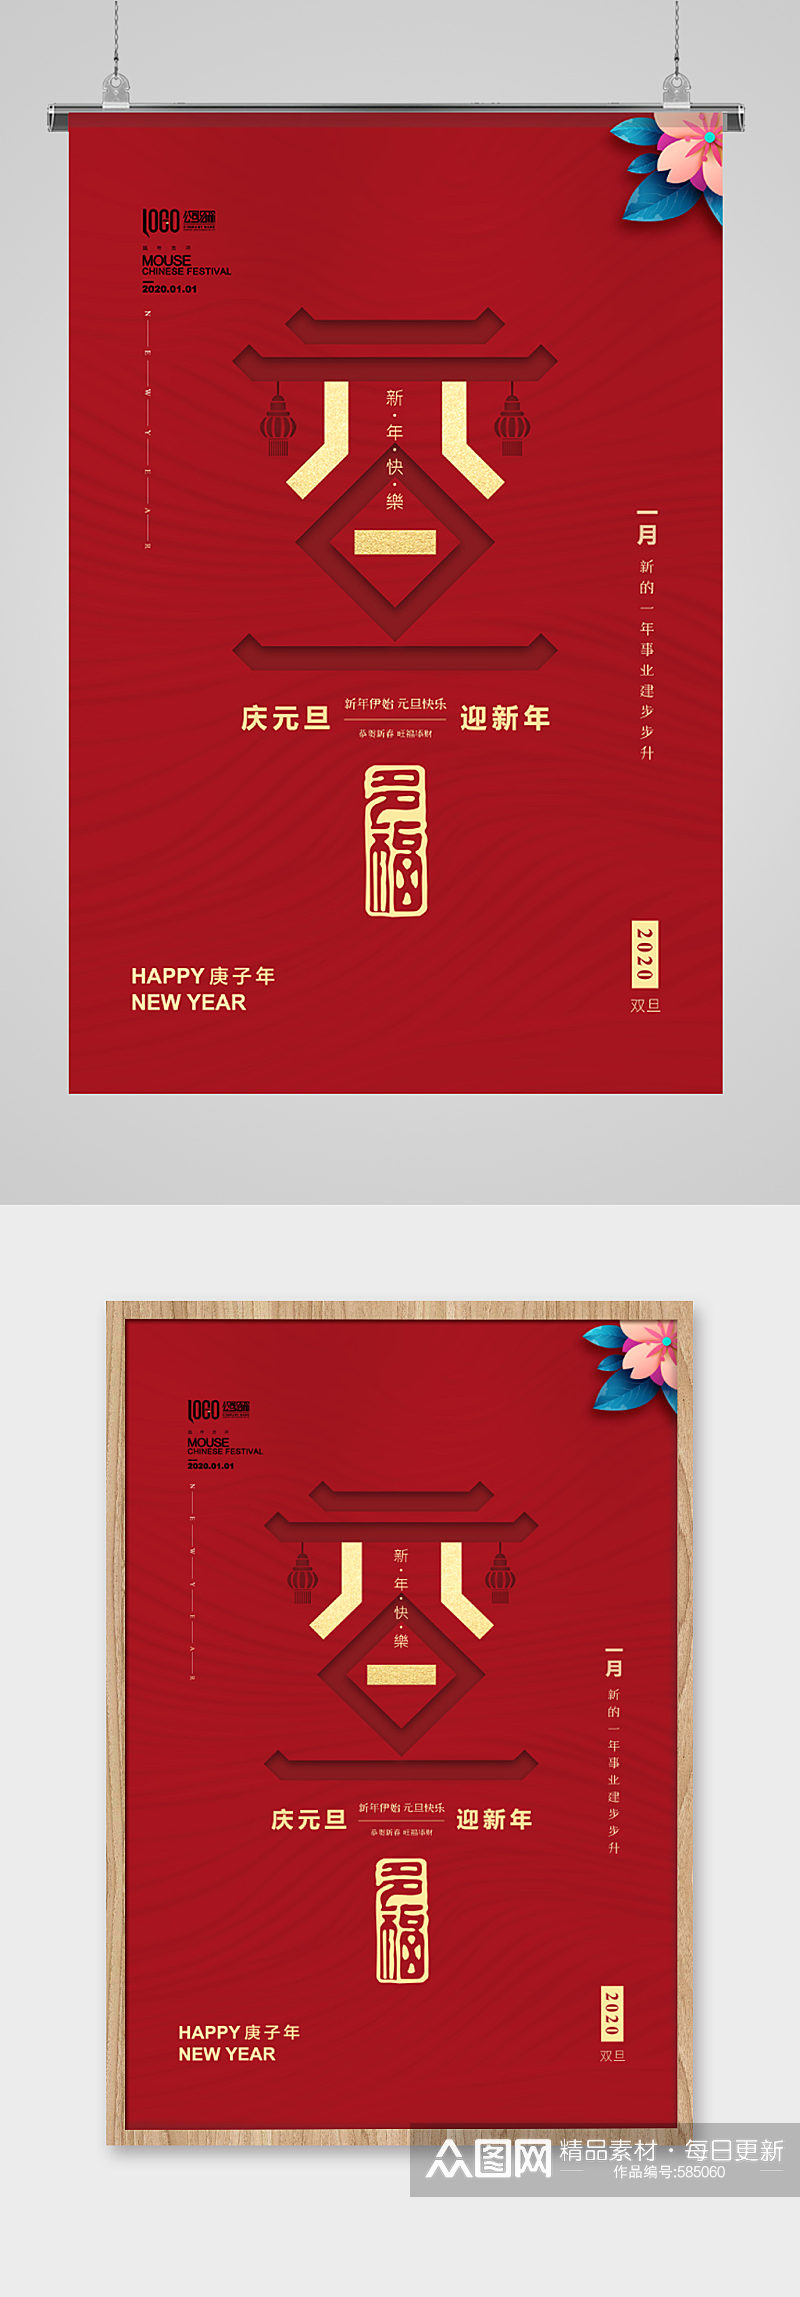 中式简约大气新年节日海报素材